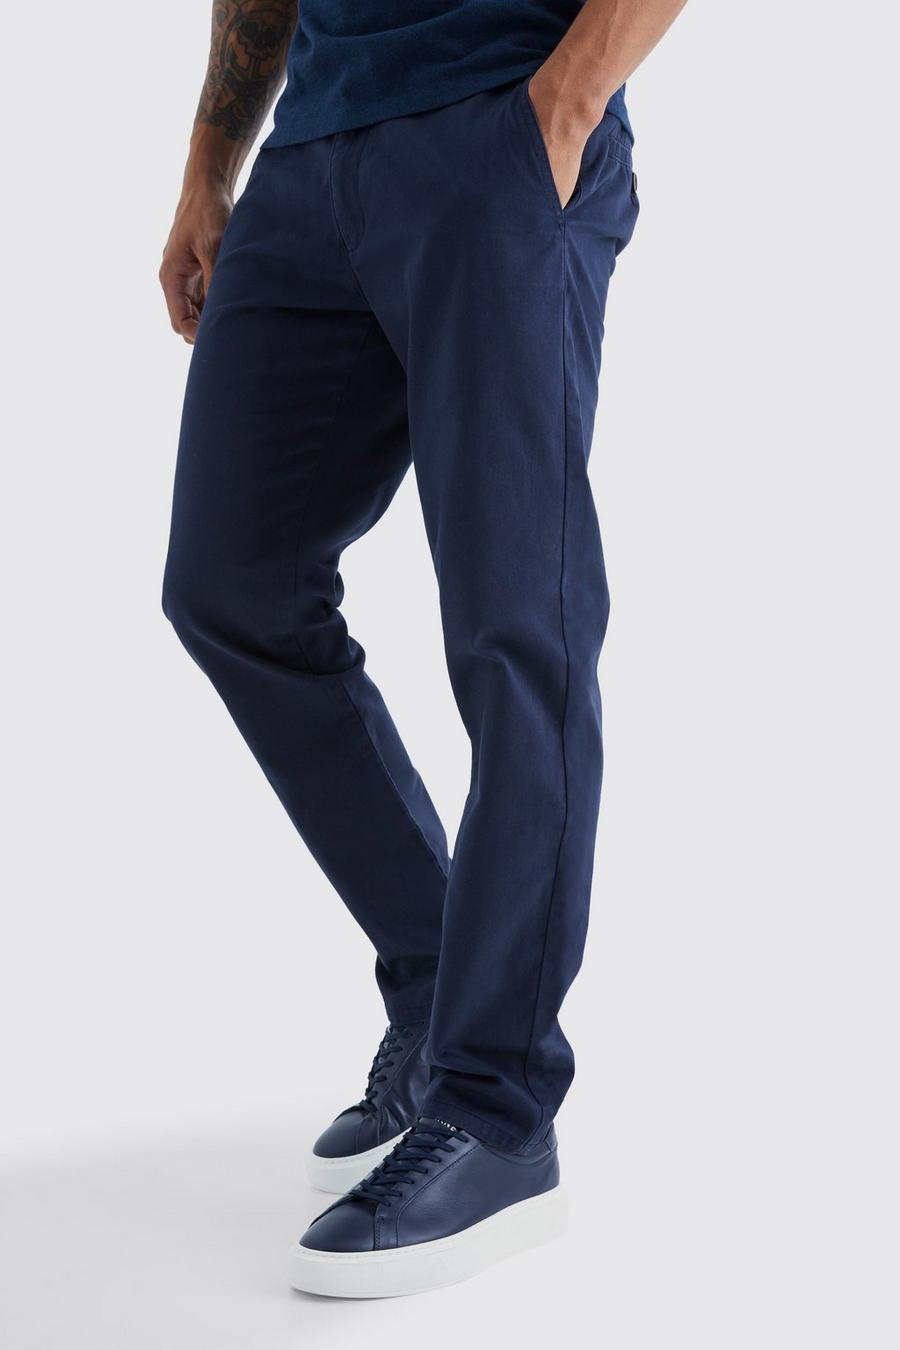 Navy azul marino Fixed Waist Slim Chino Trouser